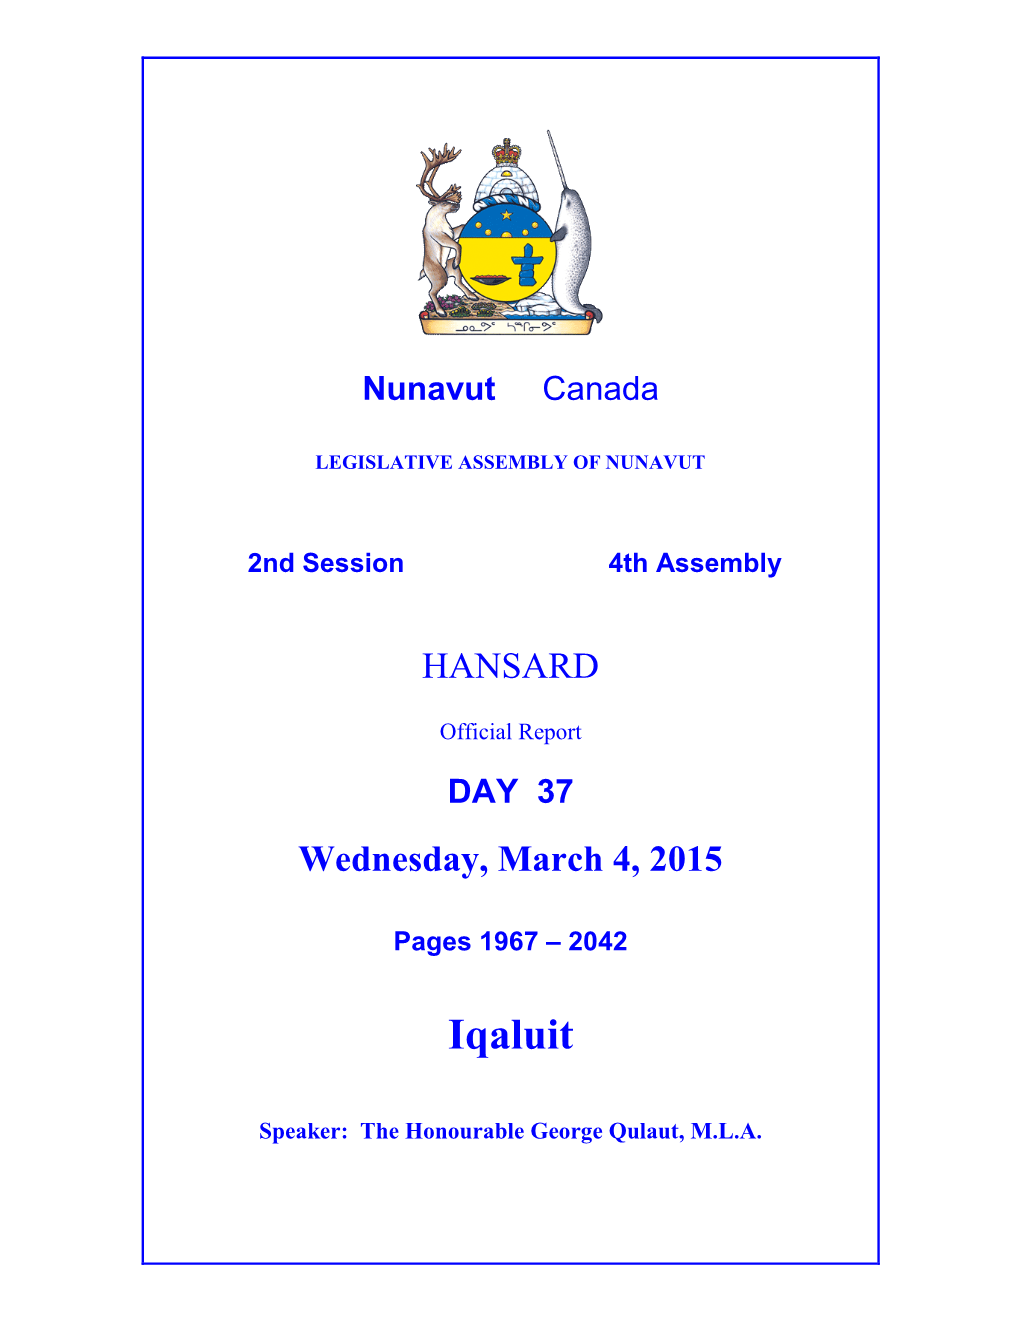 Nunavut Hansard 1967